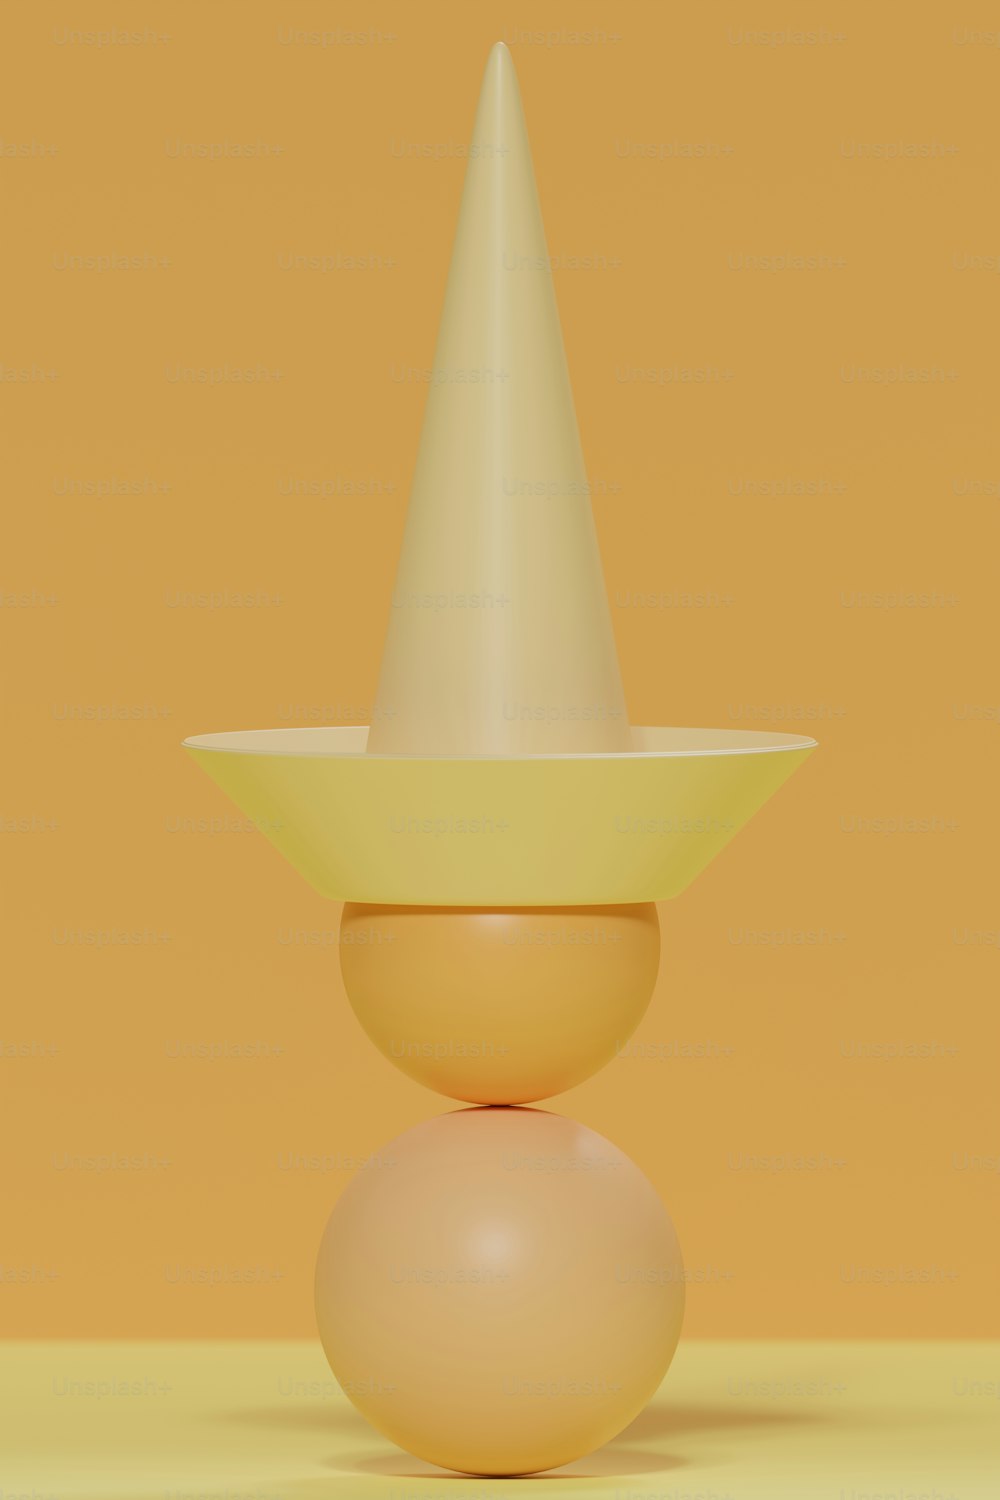 un oggetto giallo con un cono bianco sopra di esso